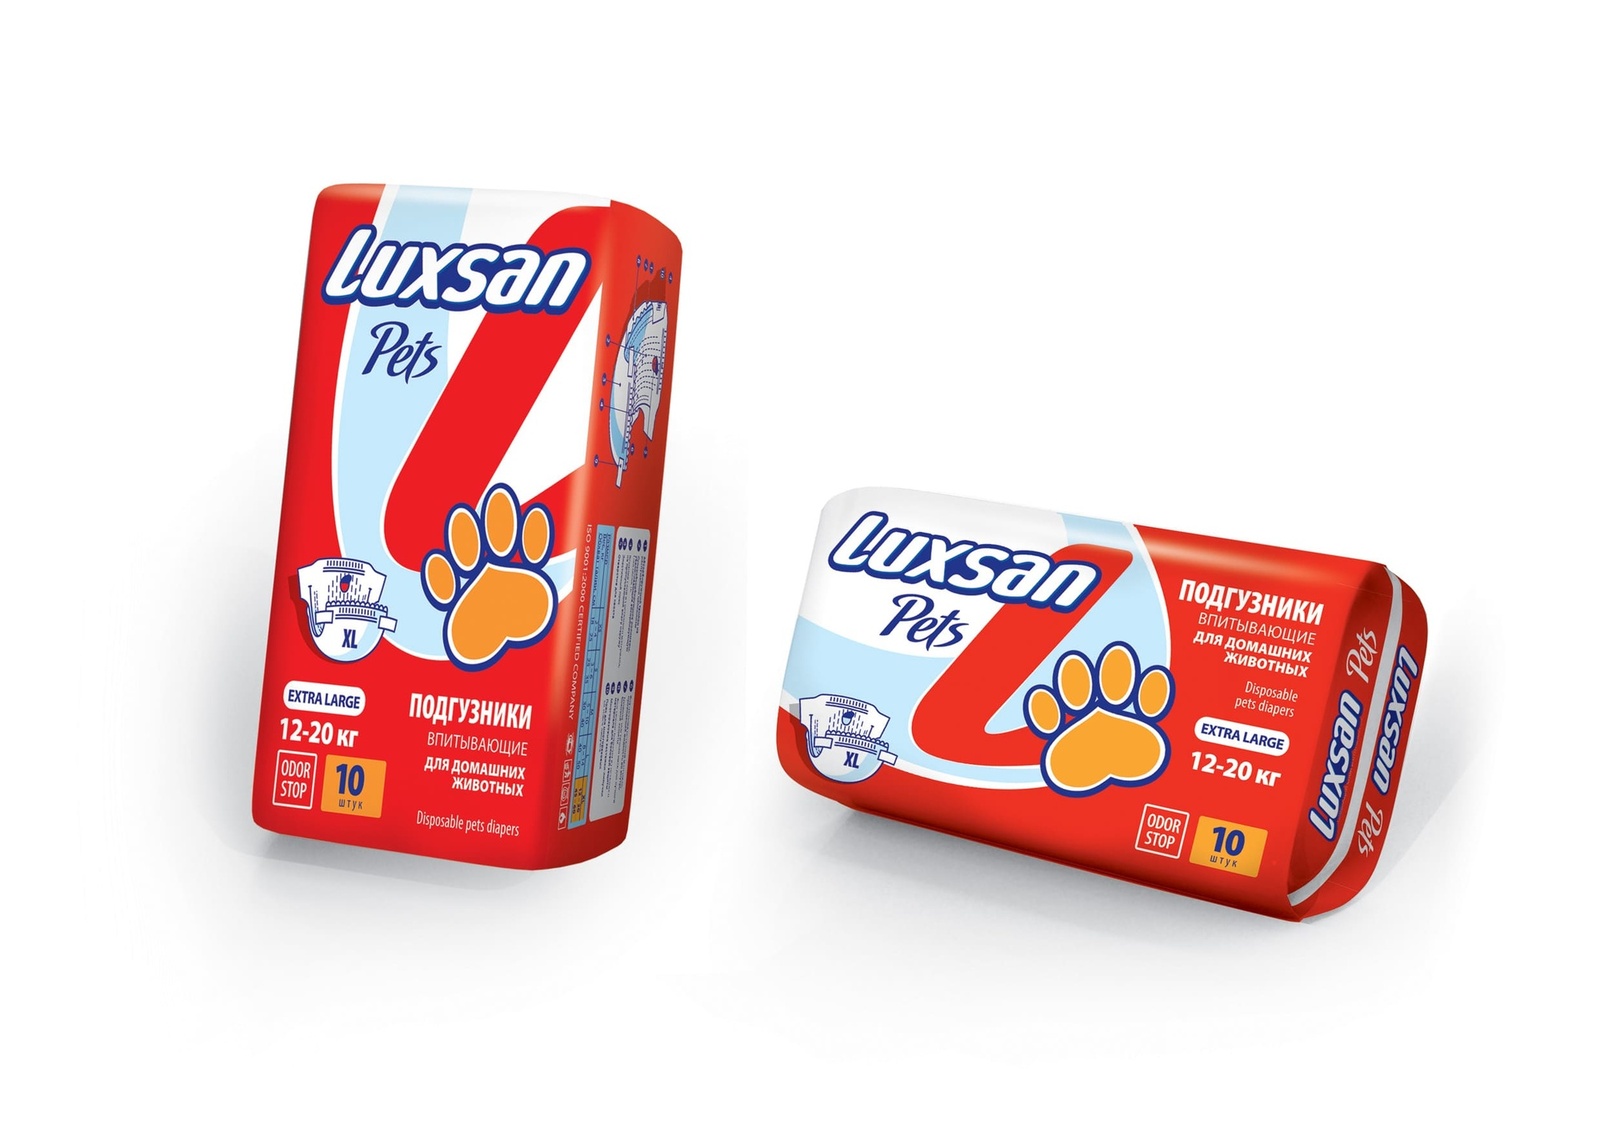 Luxsan подгузники для животных: 12-20 кг, 10 шт. (340 г)